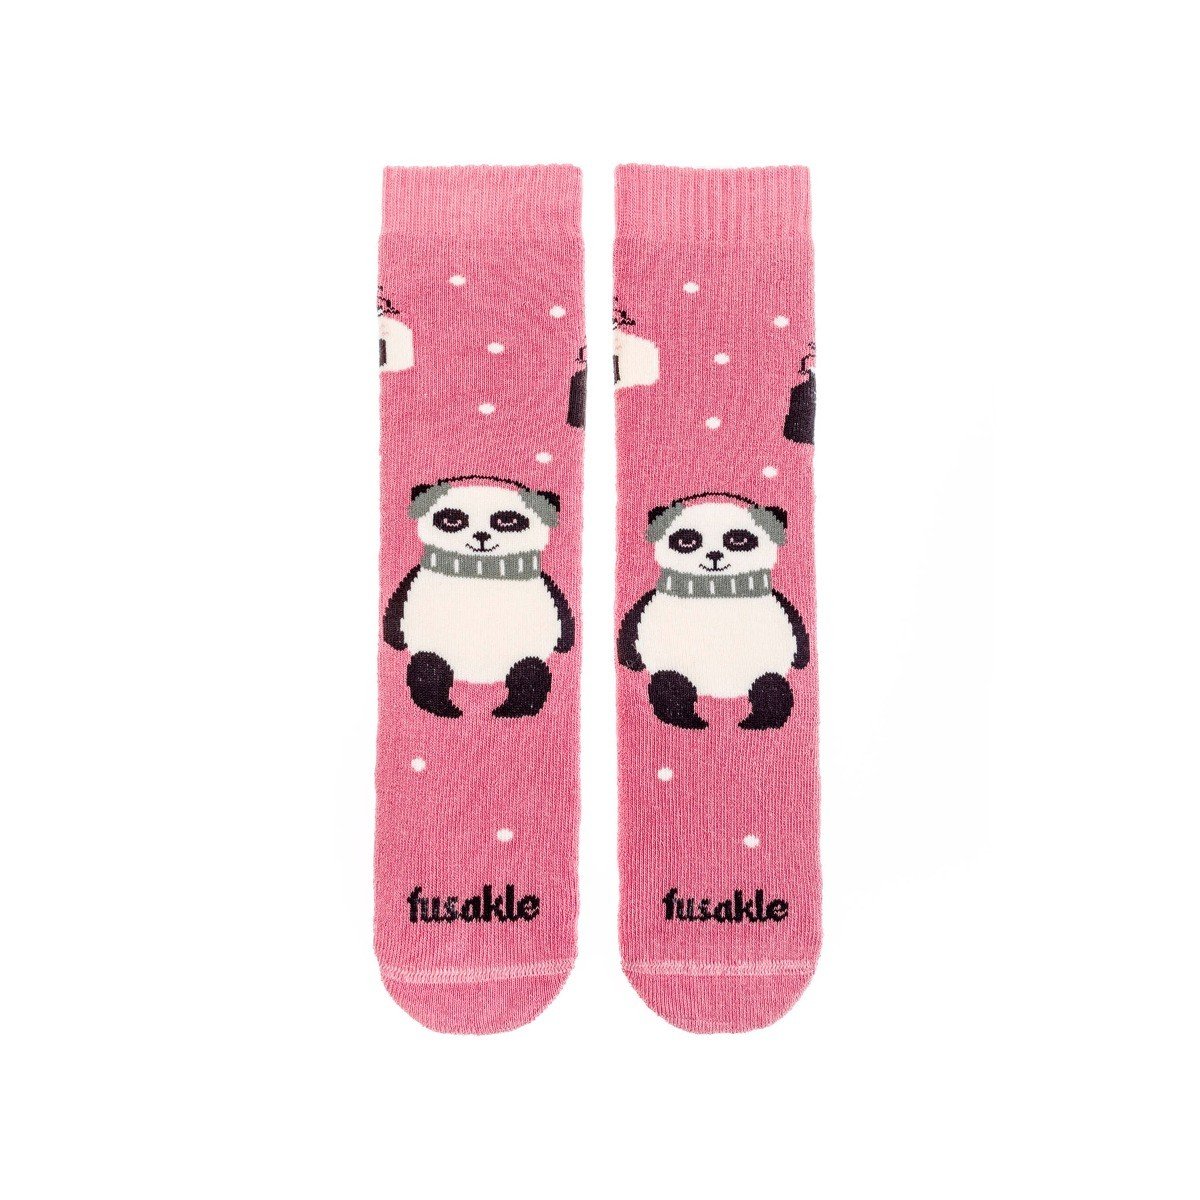 Dětské ponožky Froté Pandice Fusakle